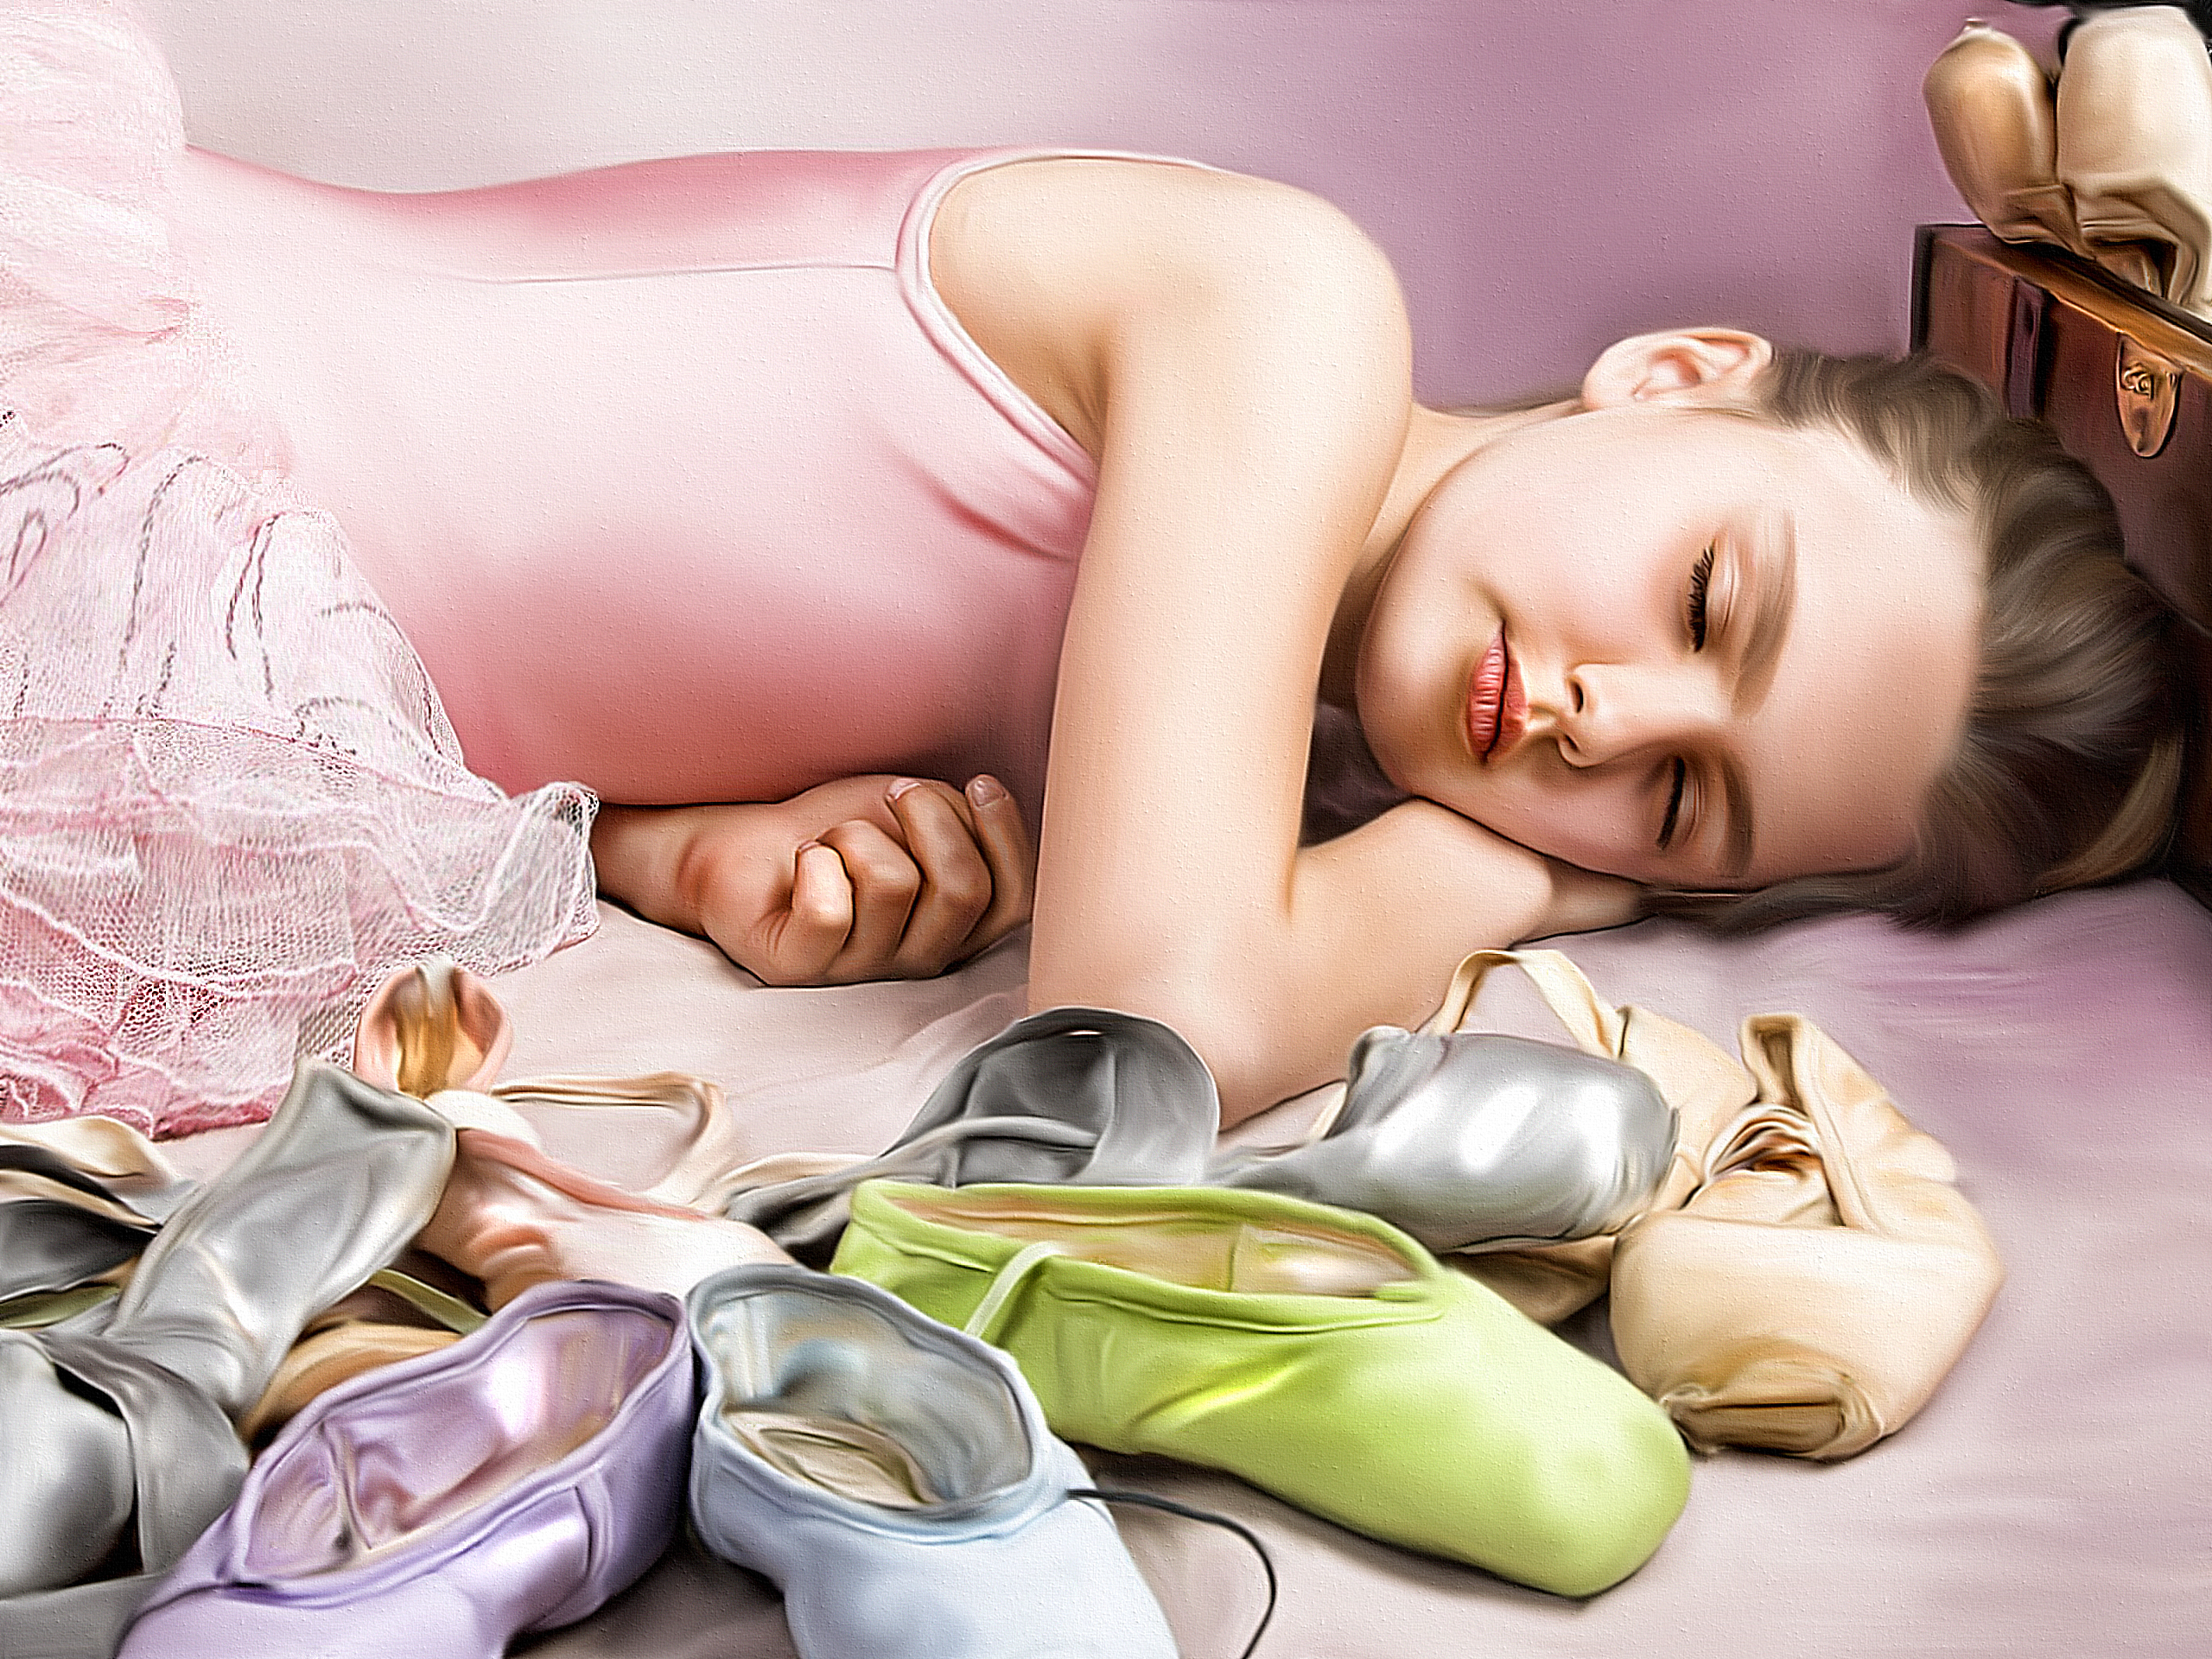 Фото девочка Балет Ballerina ребёнок Спит Отдых 2560x1920 Девочки балета балете Дети сон спят спящий релакс отдыхает